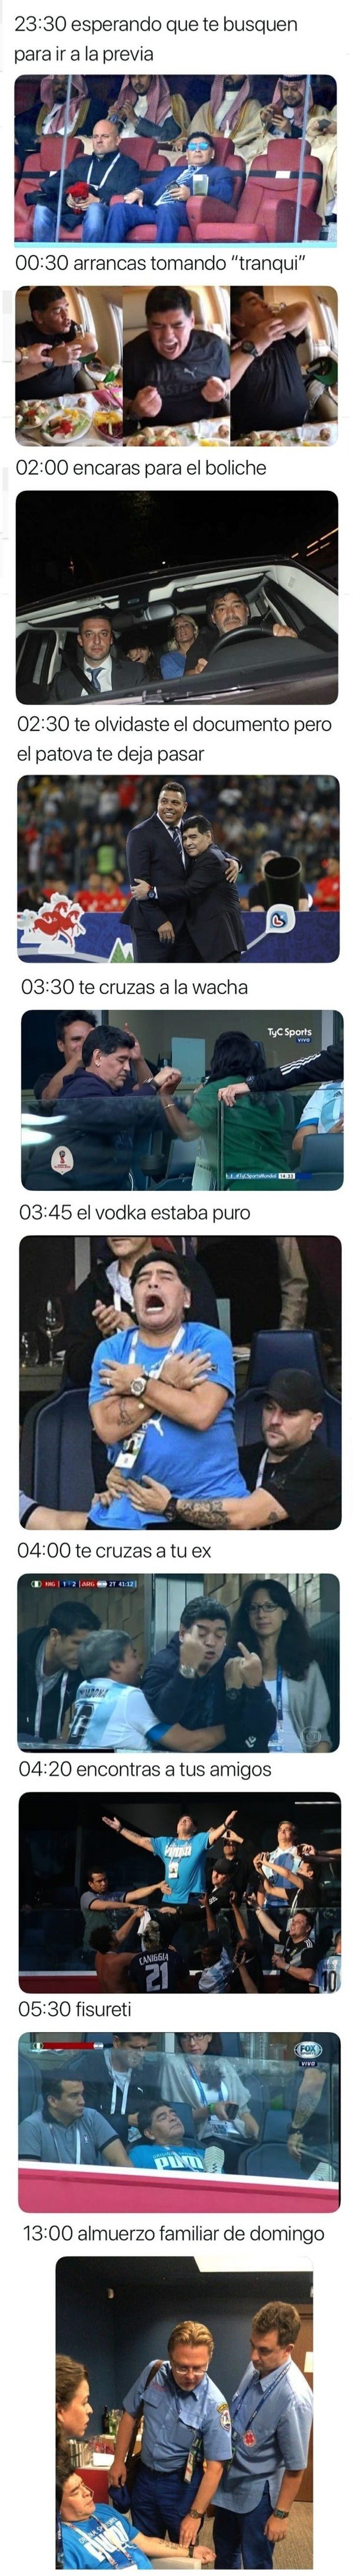 Meme_otros - Diario de un fin de semana, por Maradona